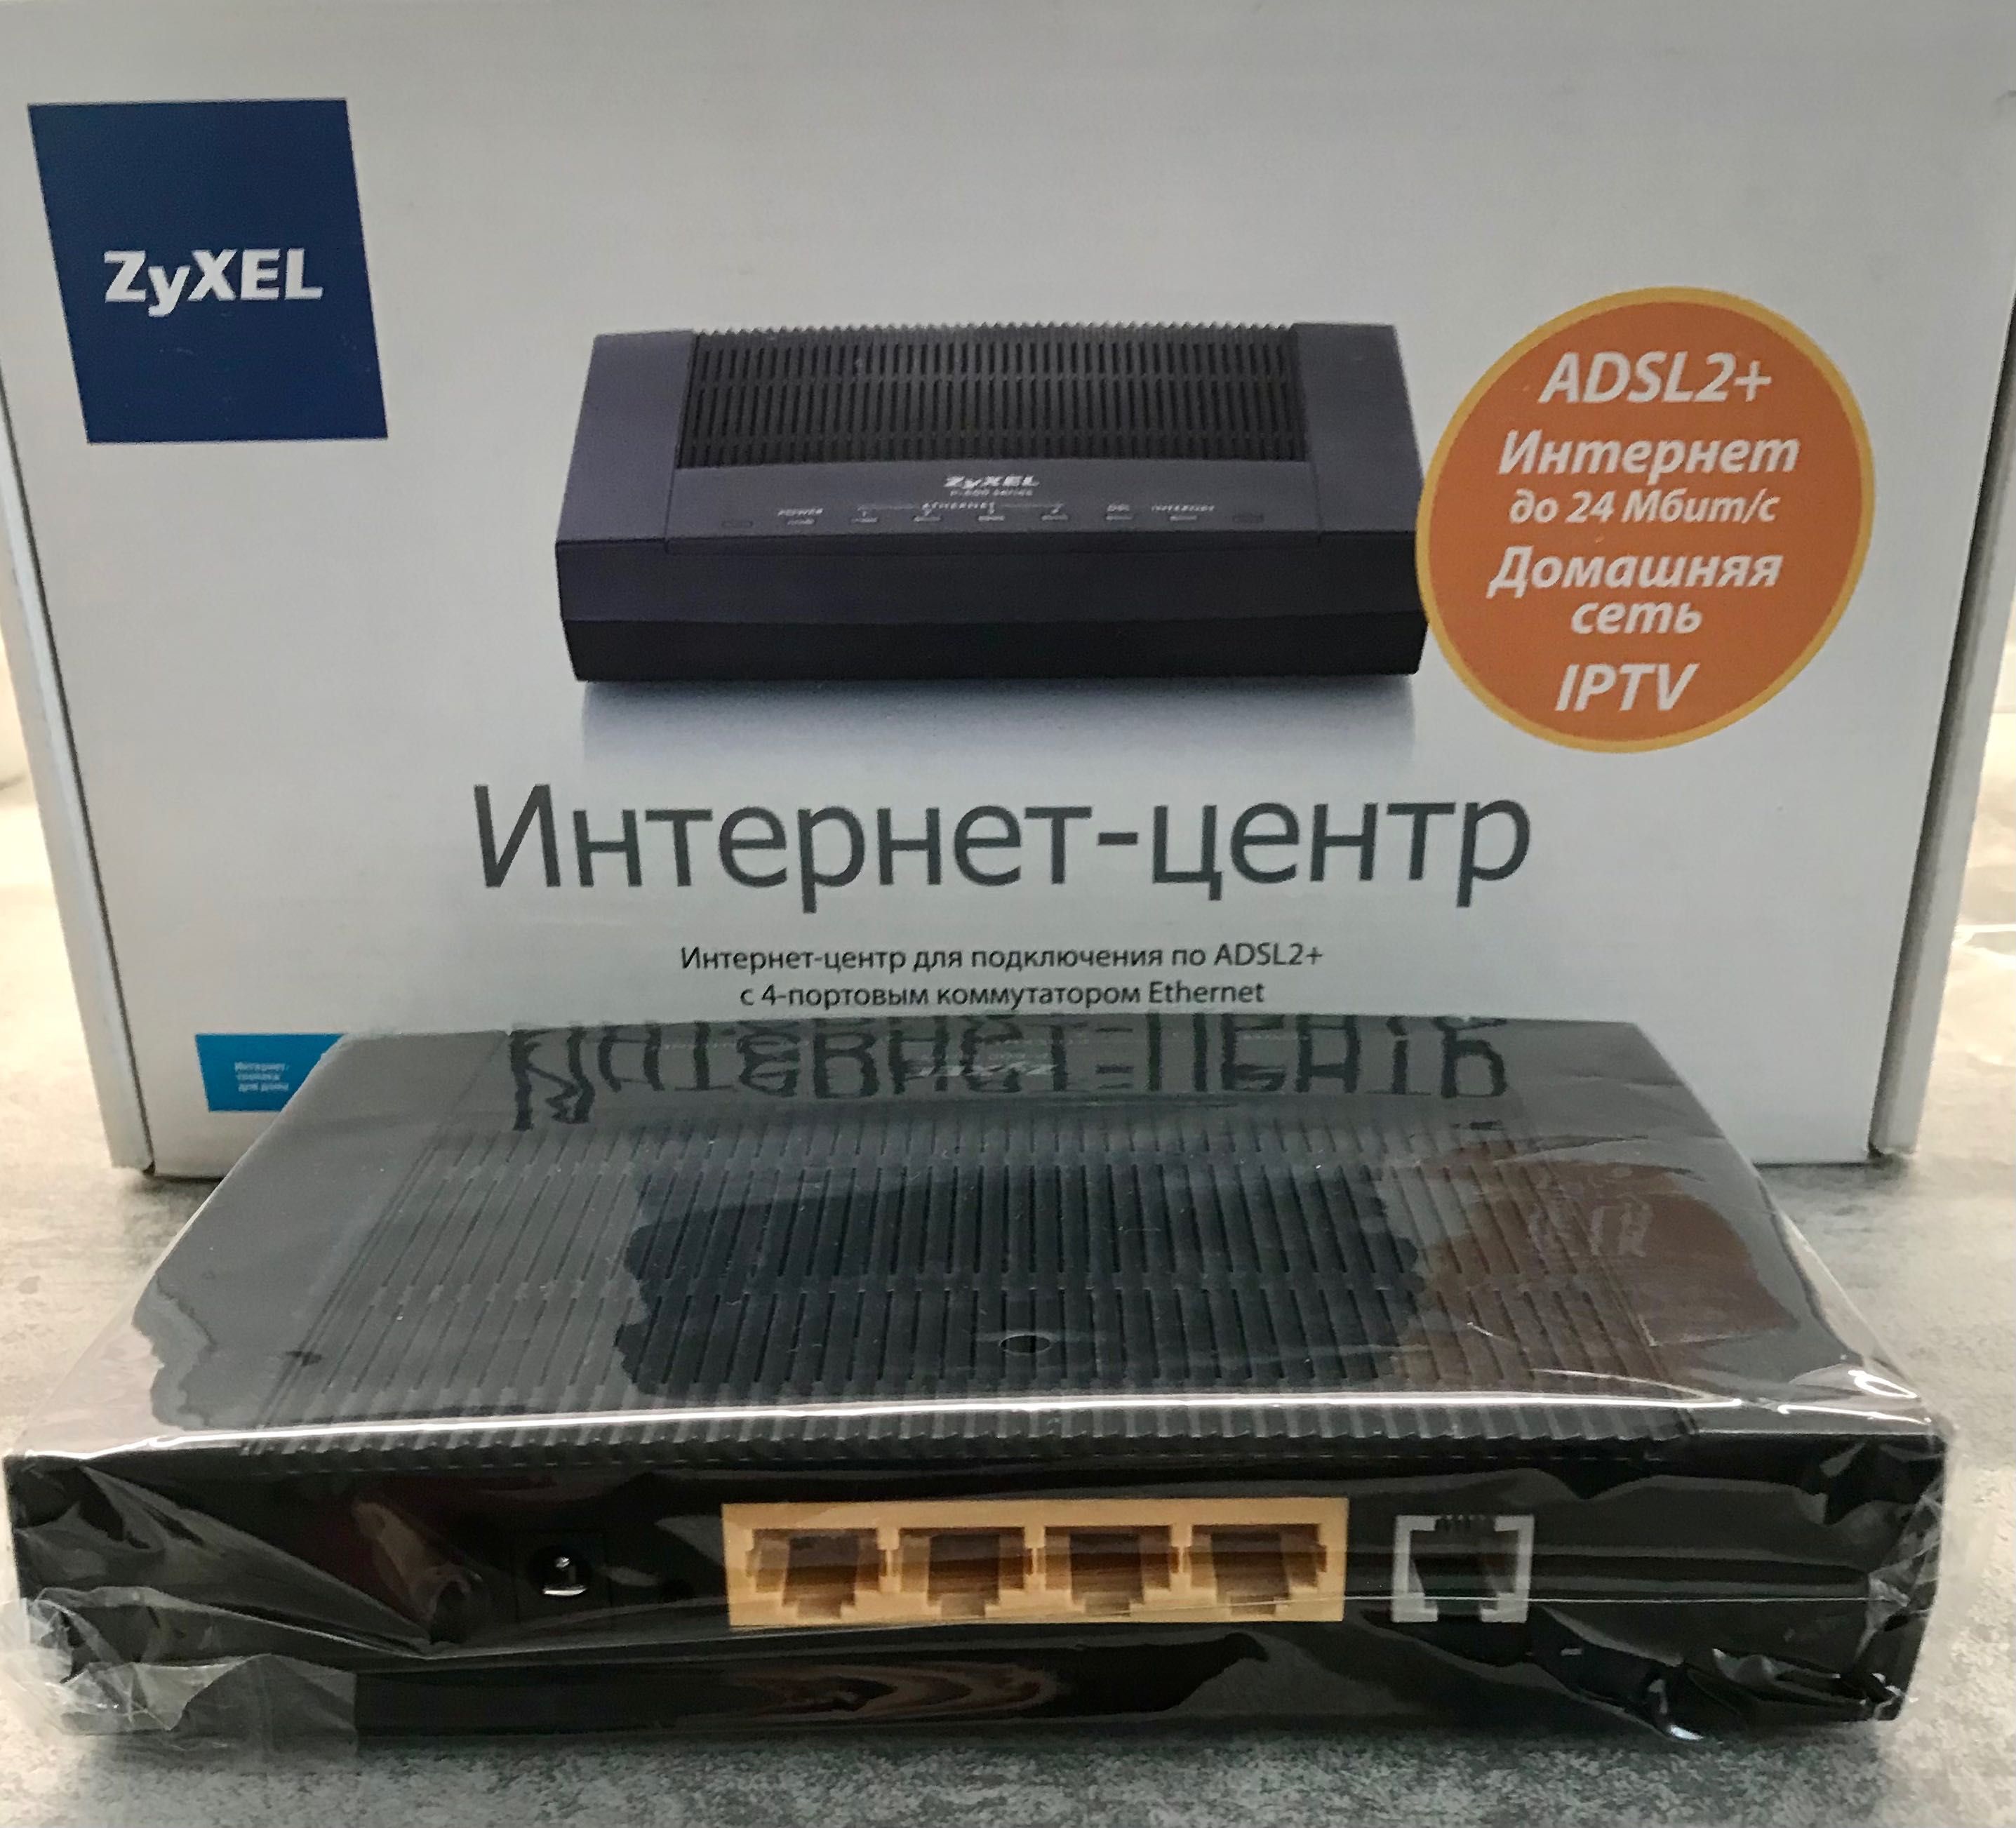 Модем ZyXEL ADSL2+ P660HT3 EE НОВЫЙ интернет центр Дом сеть IPTV